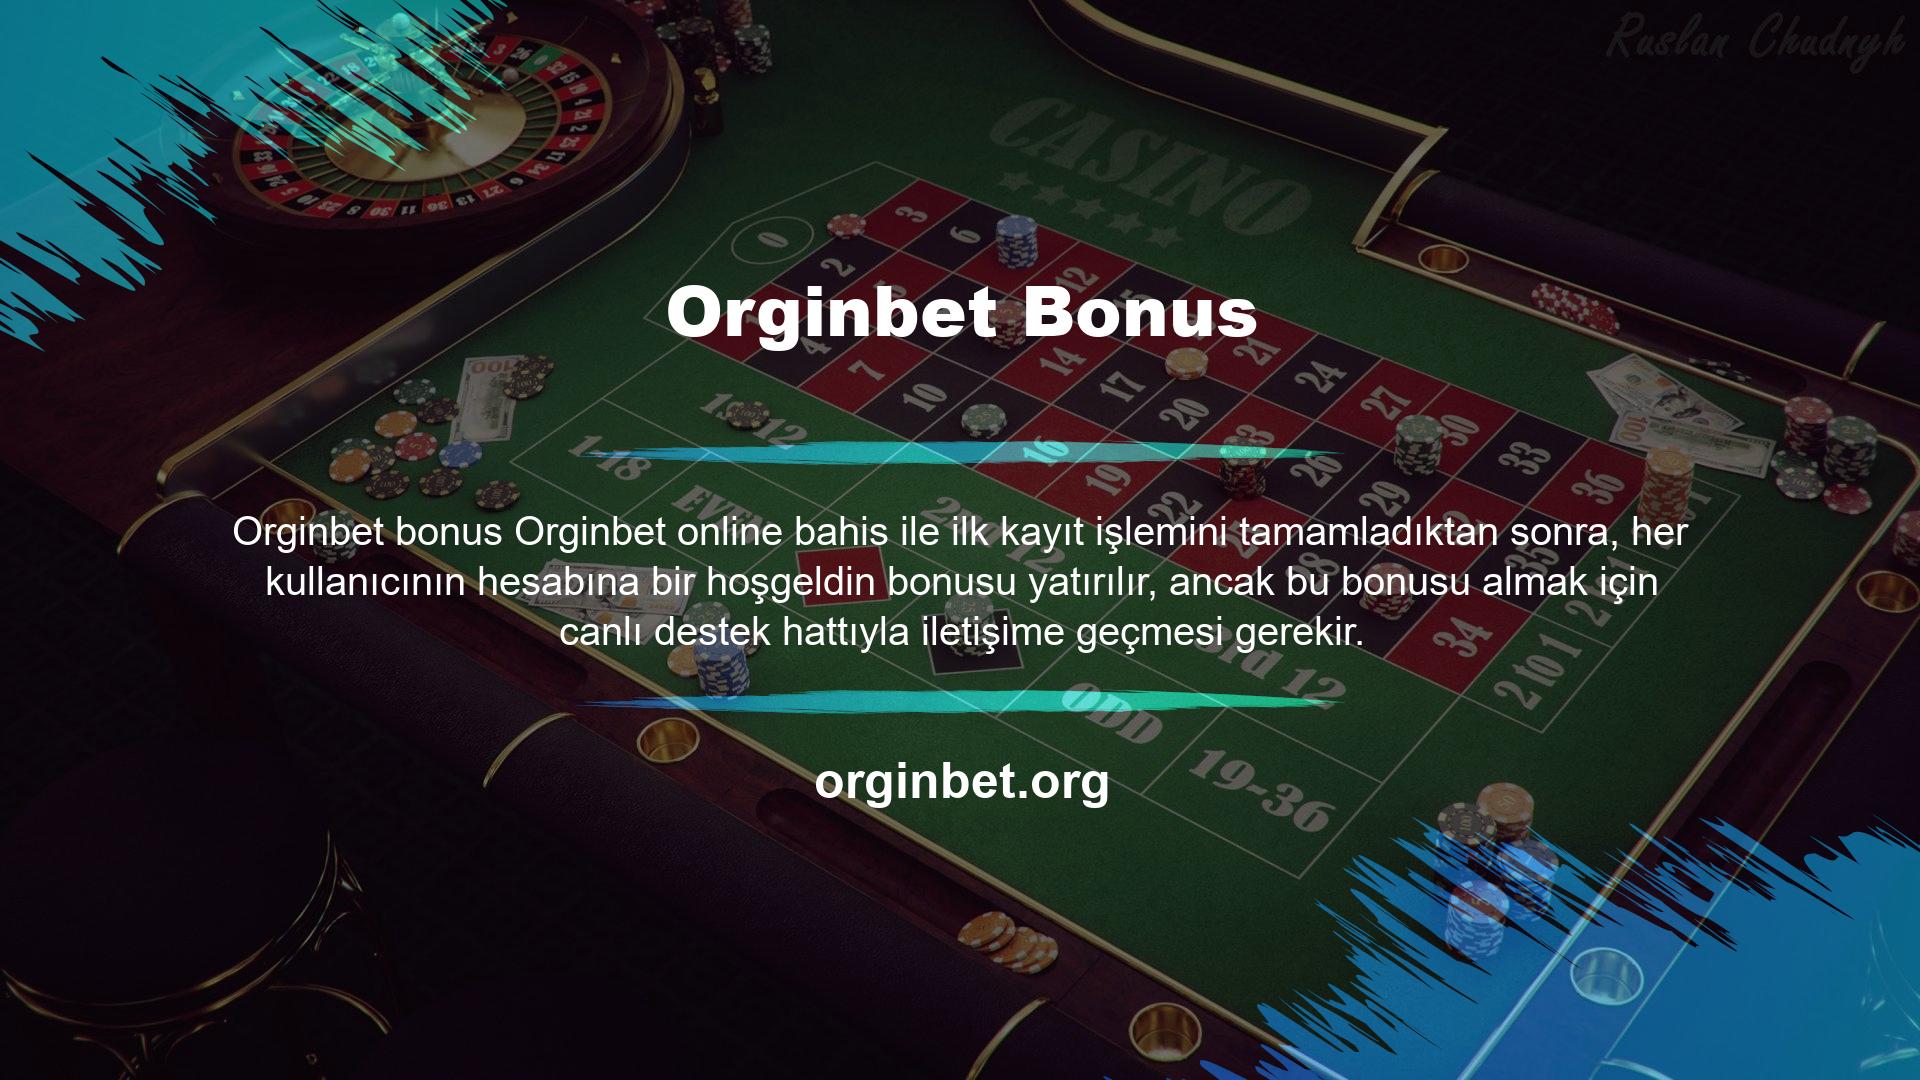 Bu tür hoşgeldin bonuslarının yanı sıra, çevrimiçi casino sitelerinde birçok bonus türü mevcuttur